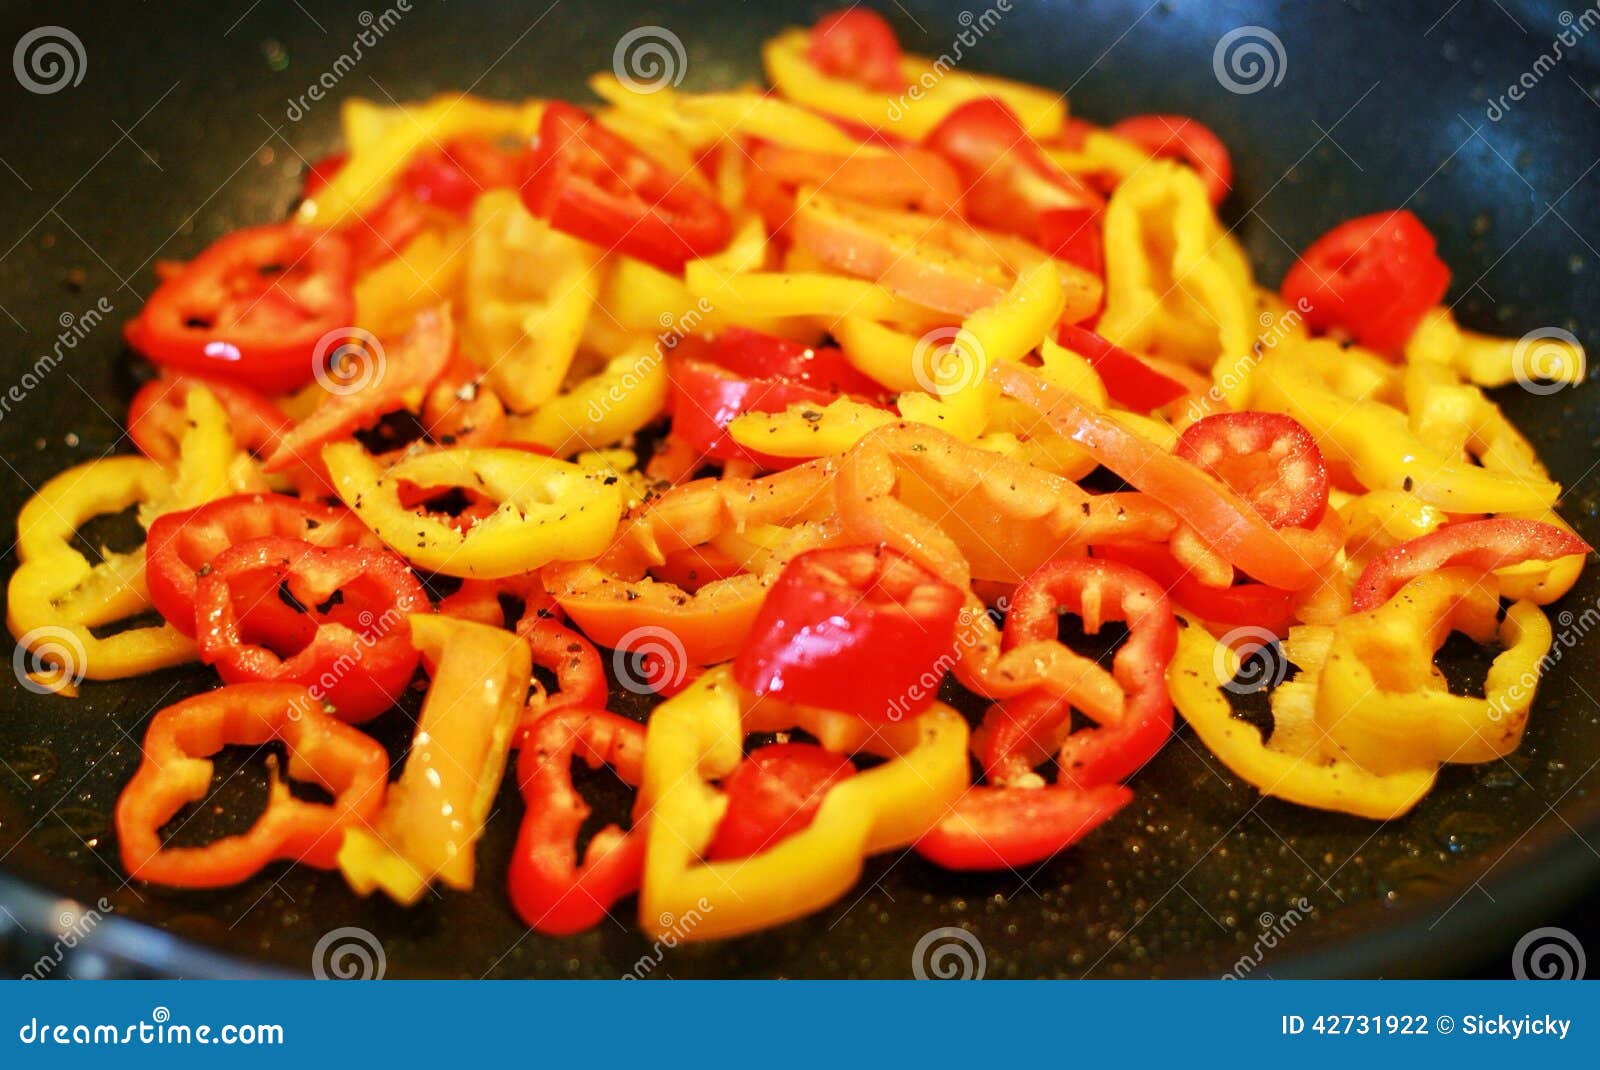 sautÃÂ©ed peppers